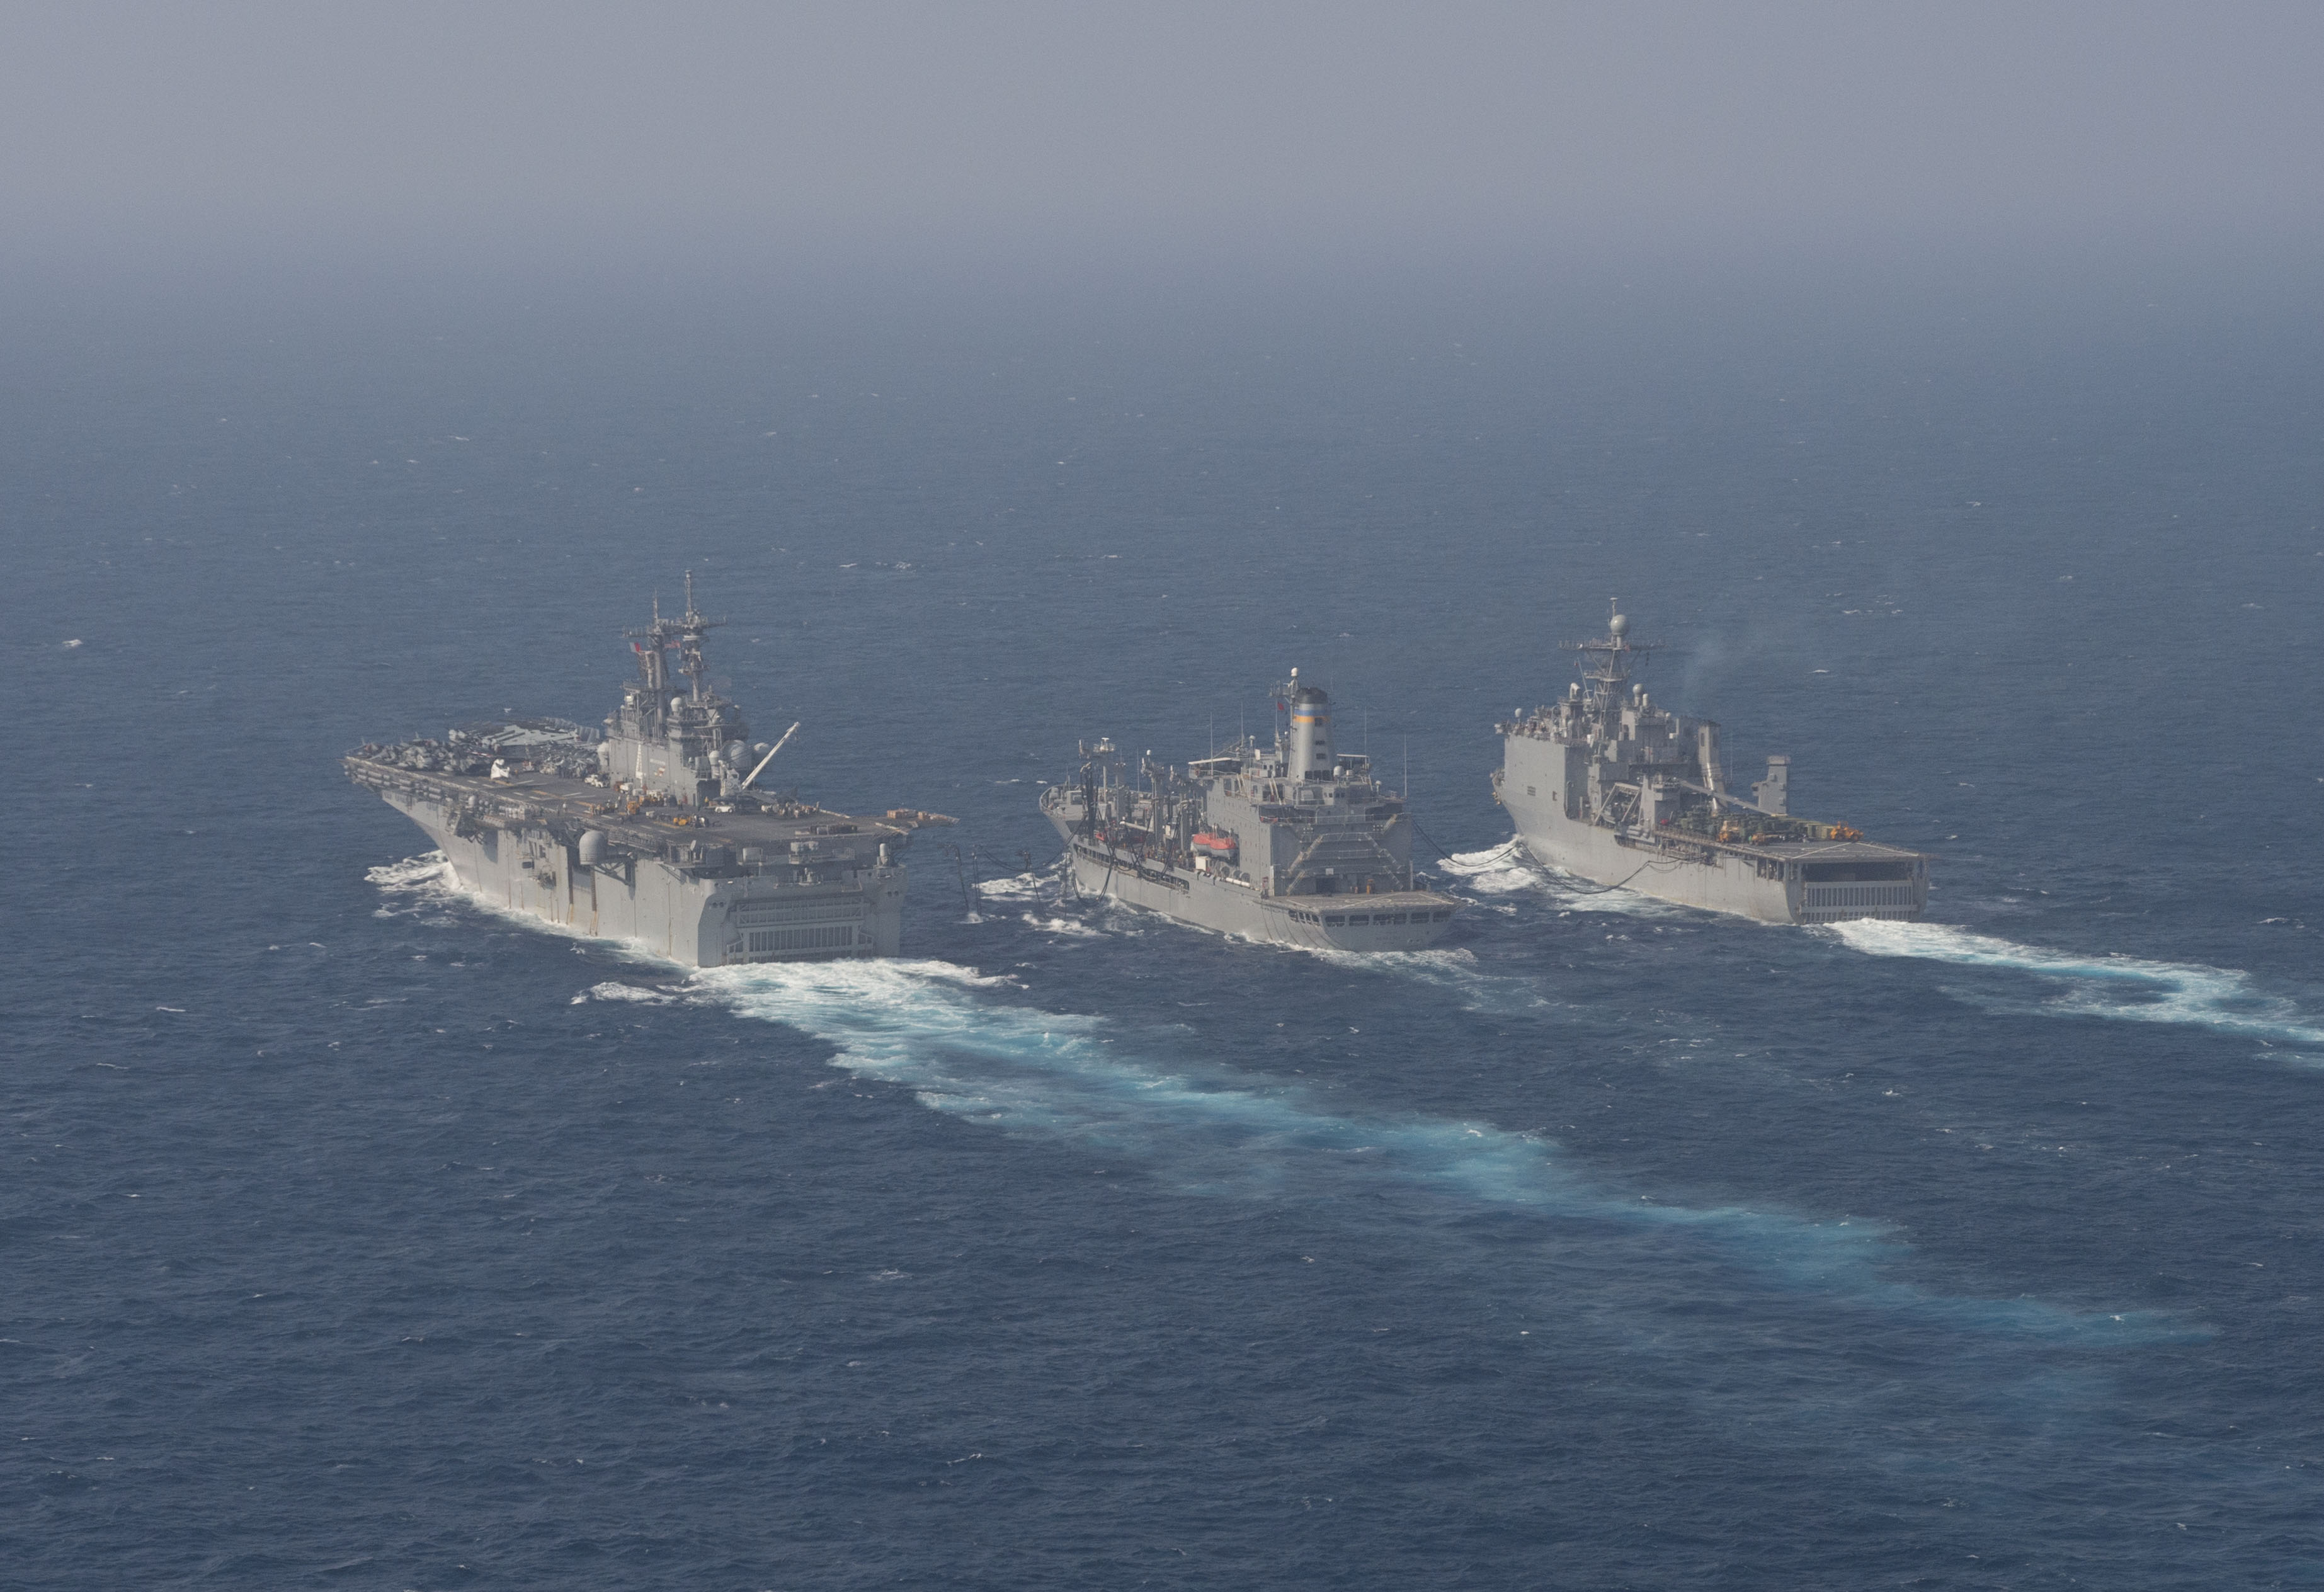 Tàu hải quân Mỹ trên Biển Đông ngày 29.3.2016 - Ảnh: US Navy